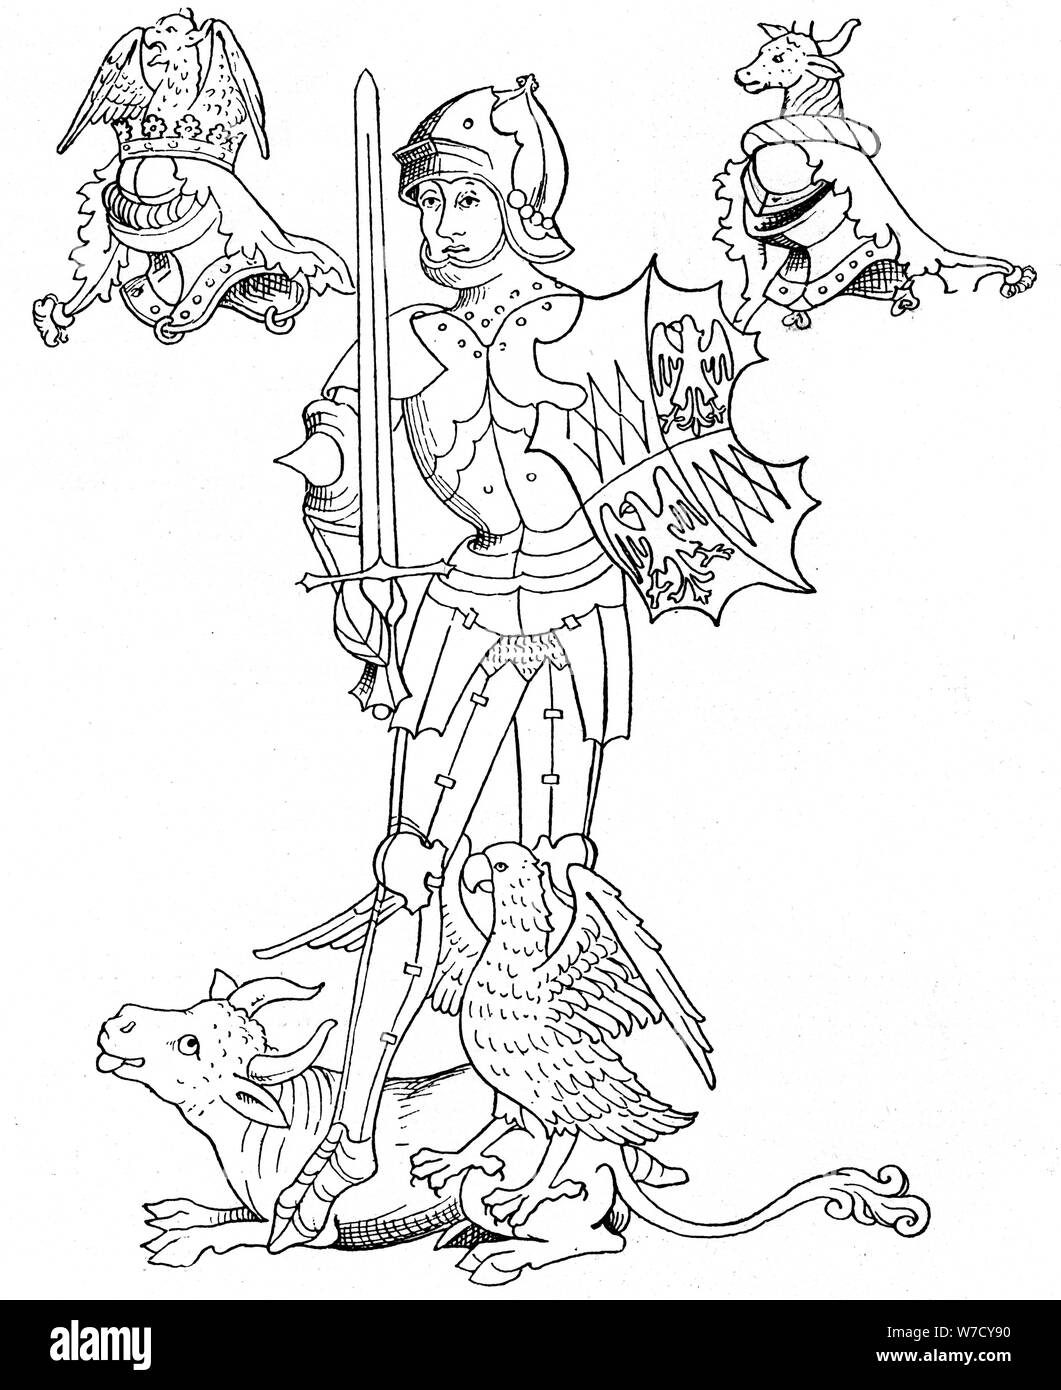 Richard Neville ou Philippe, Comte de Warwick, soldat et homme d'médiévale anglaise, 19ème siècle. Artiste : Anon Banque D'Images